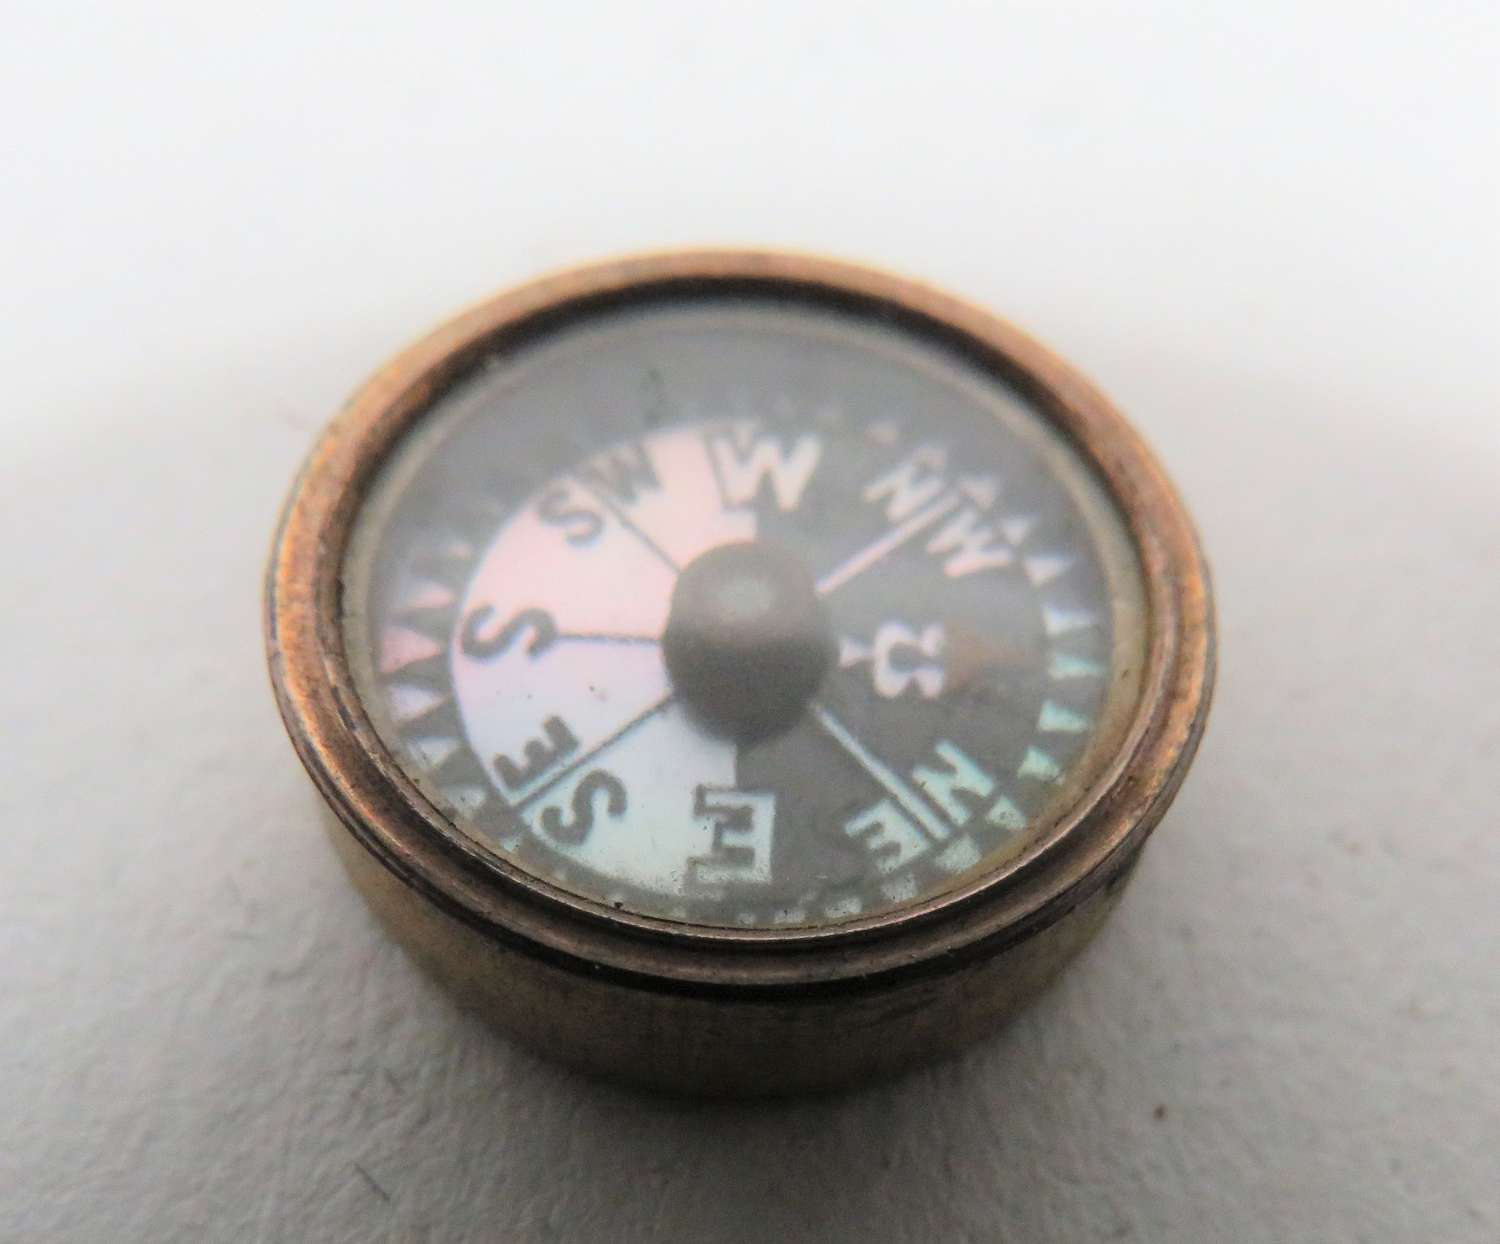 WW2 Private Purchase Small Escape Compass